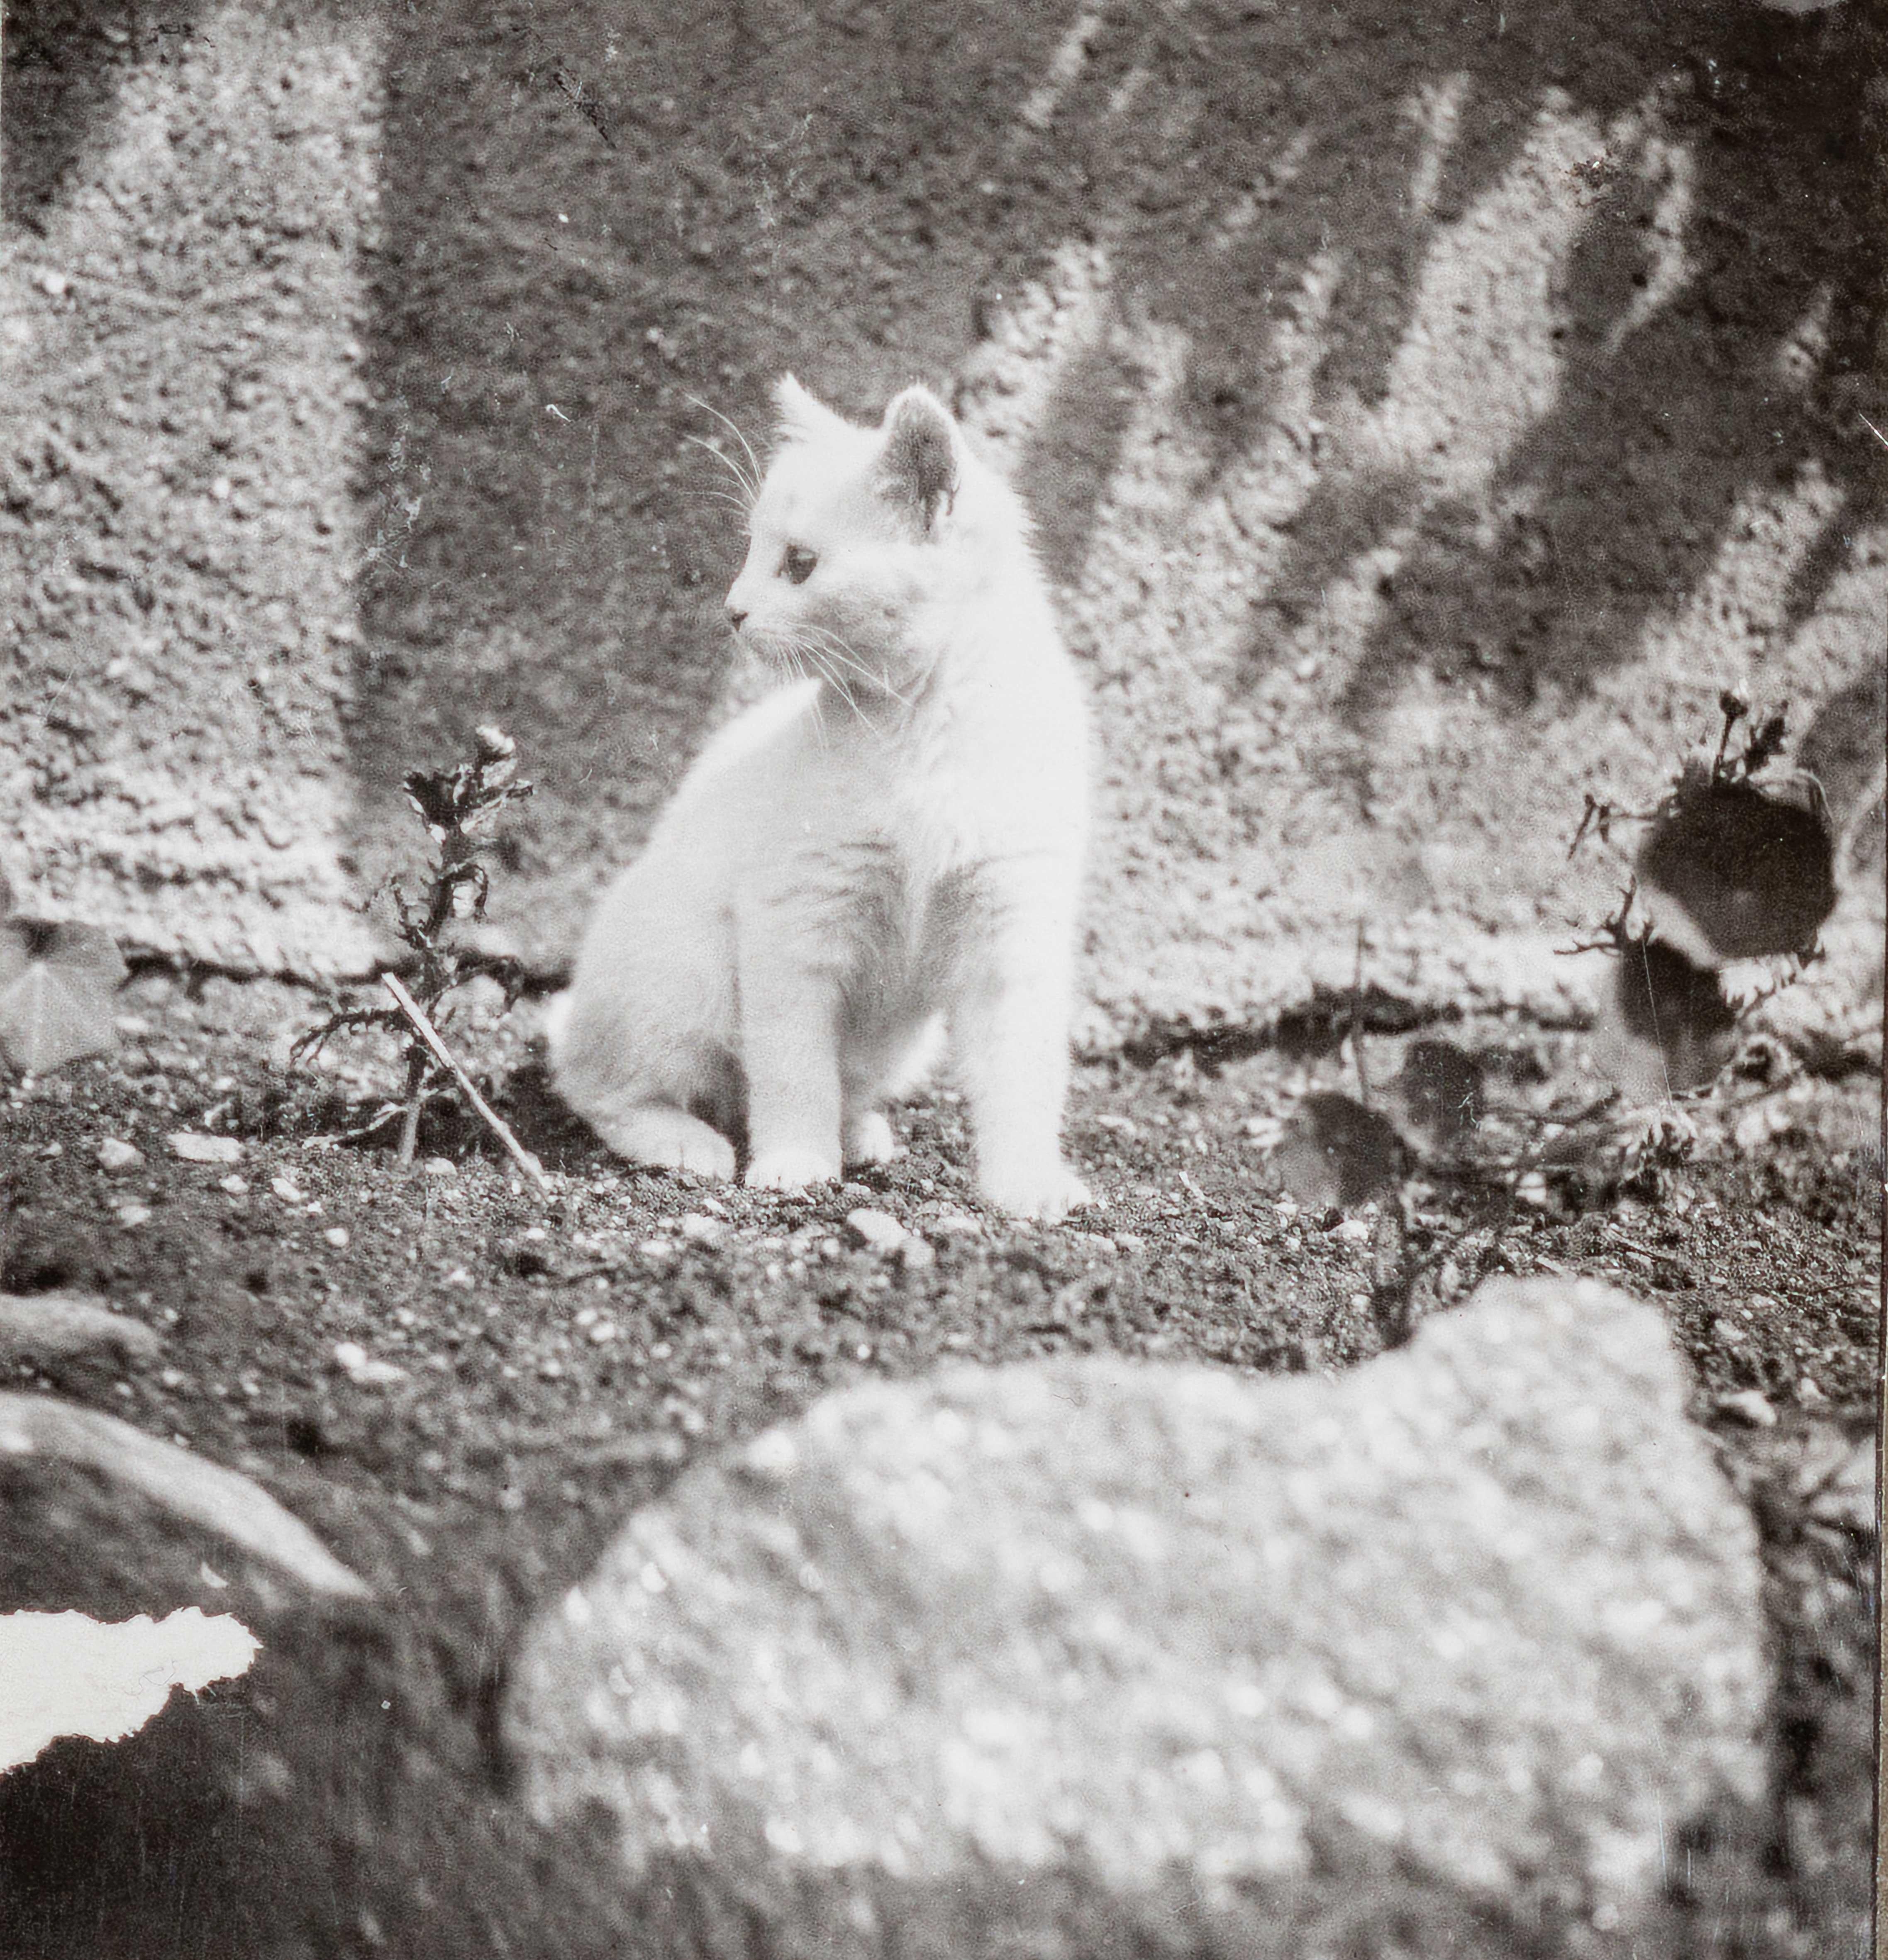 Dora Maar Black and White Photograph – Savoie Katze, (Chat Savoie) III